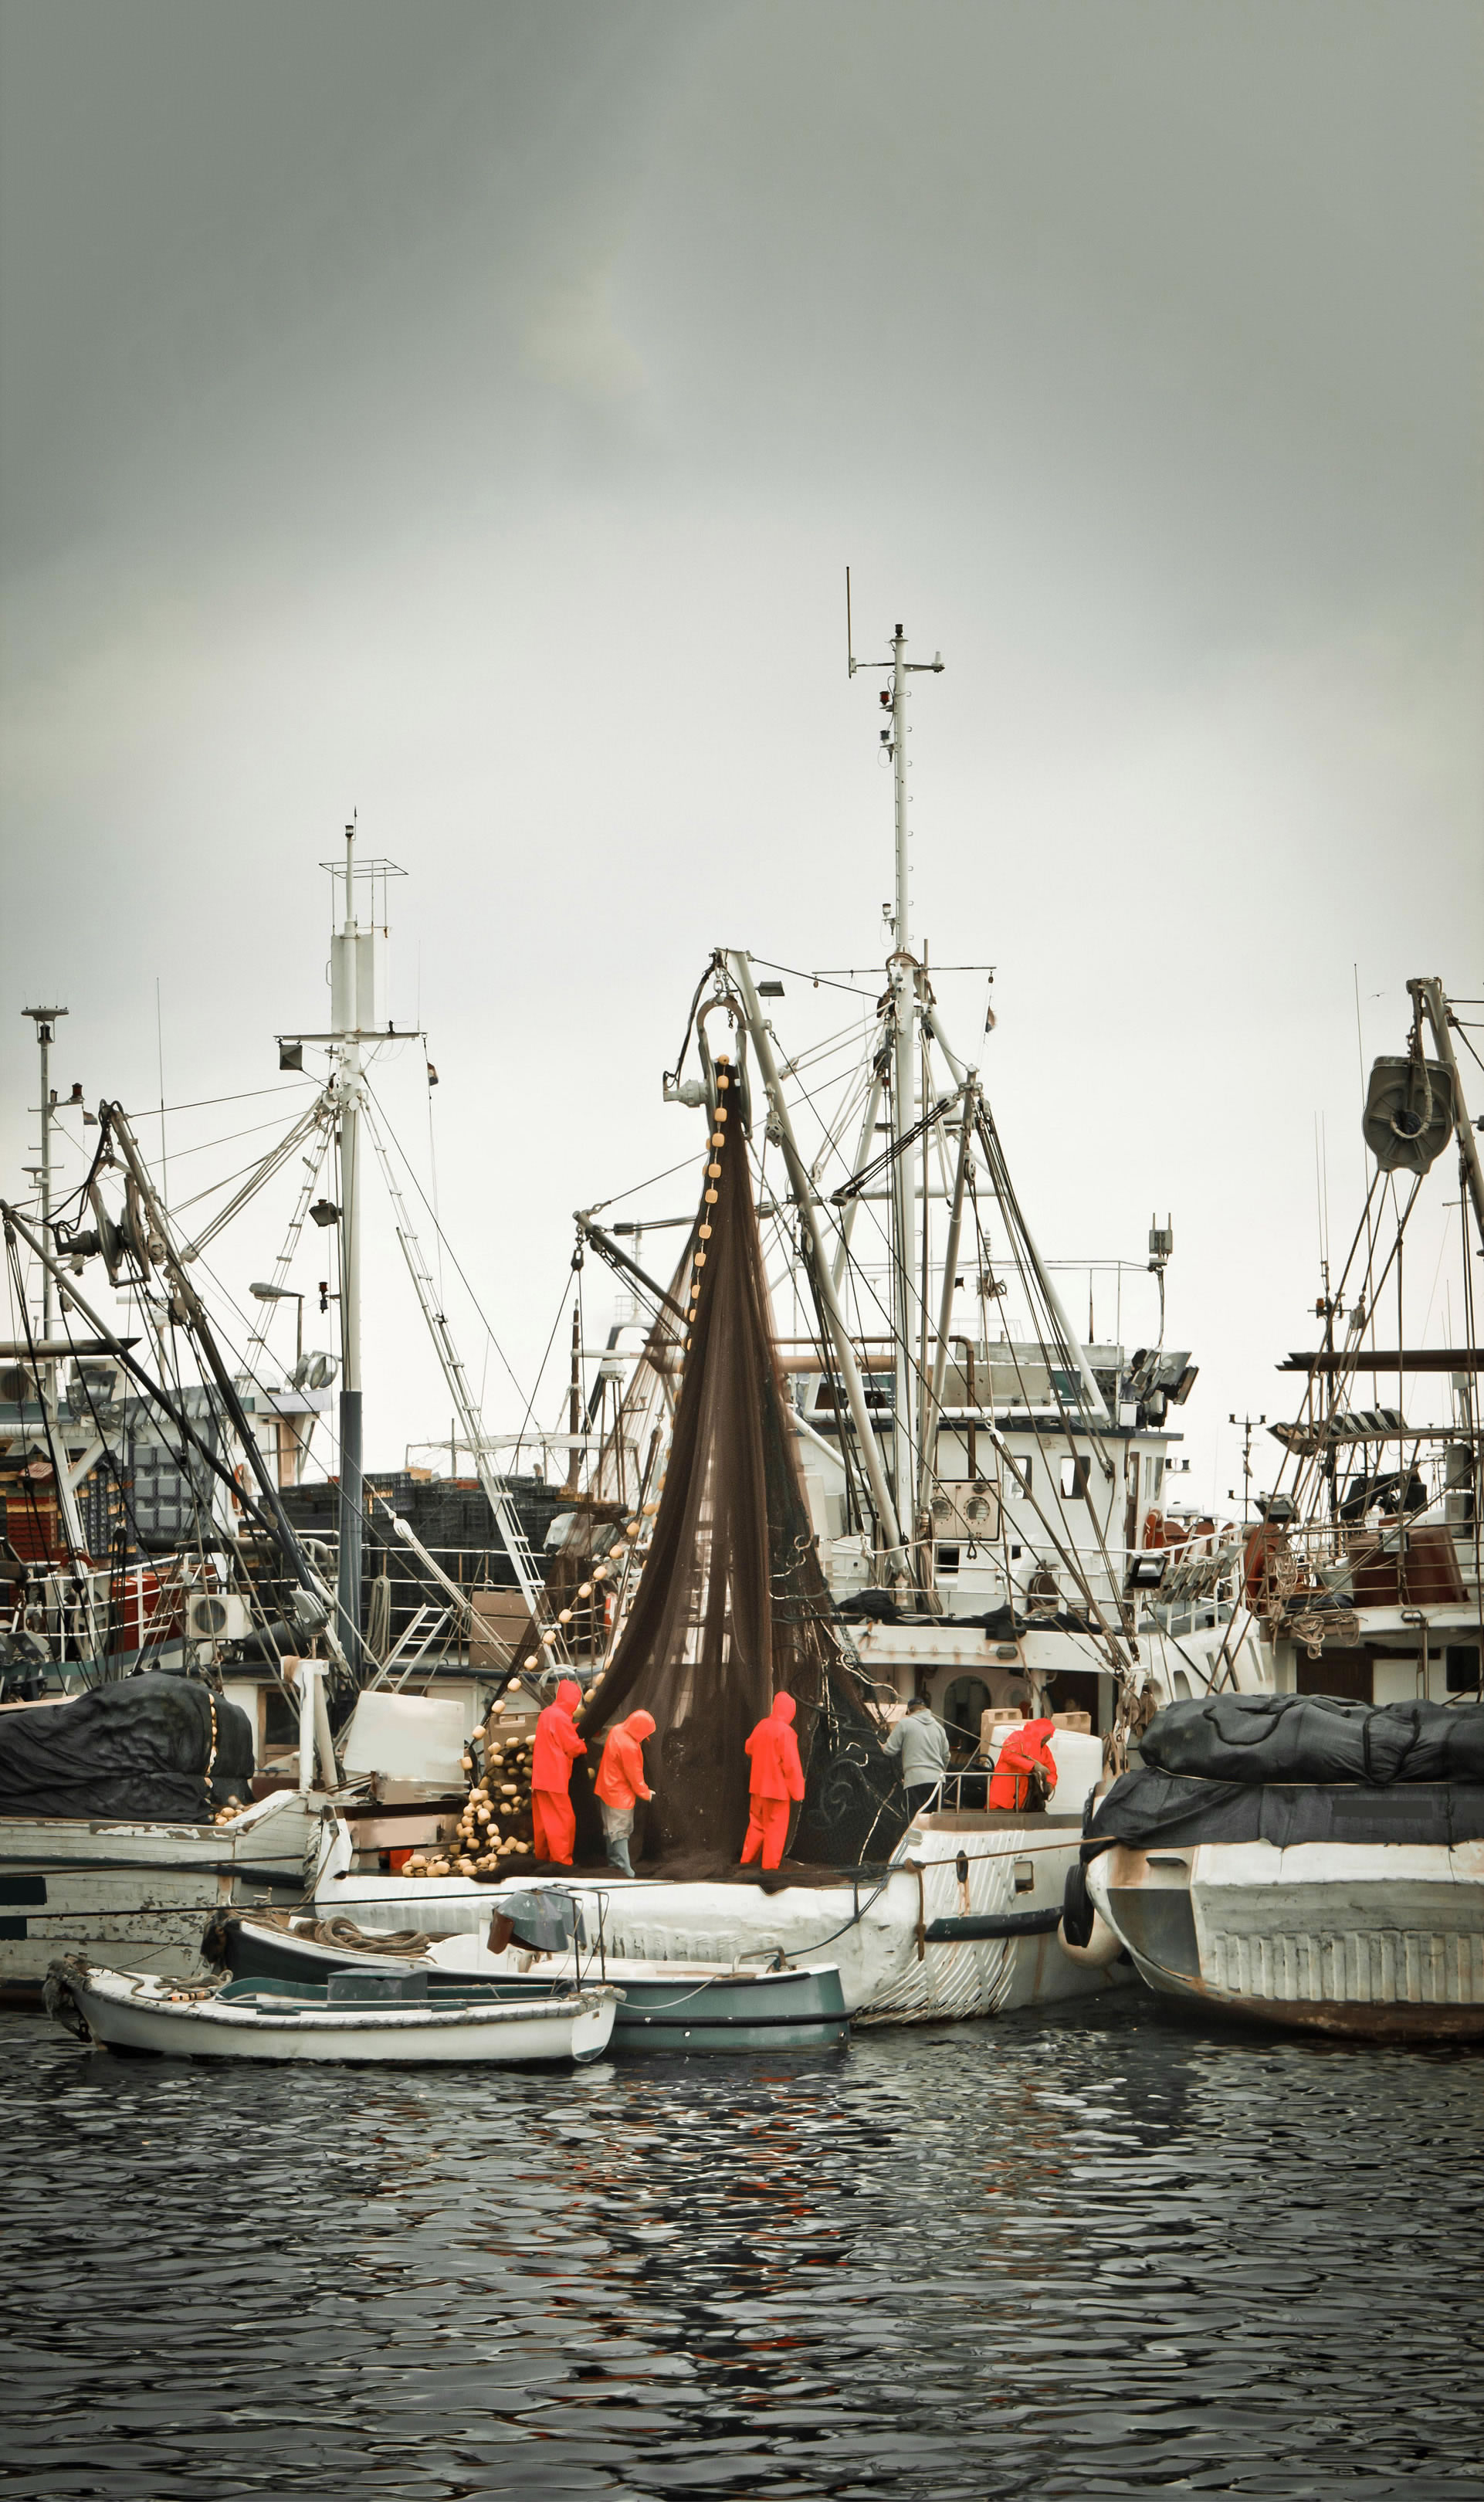 Αλιείς με επαγγελματική στολή τοποθετούν δίχτυα πάνω σε μηχανότρατα που βρίσκεται ανάμεσα σε άλλα πλοία σε κάποιο αλιευτικό λιμάνι.